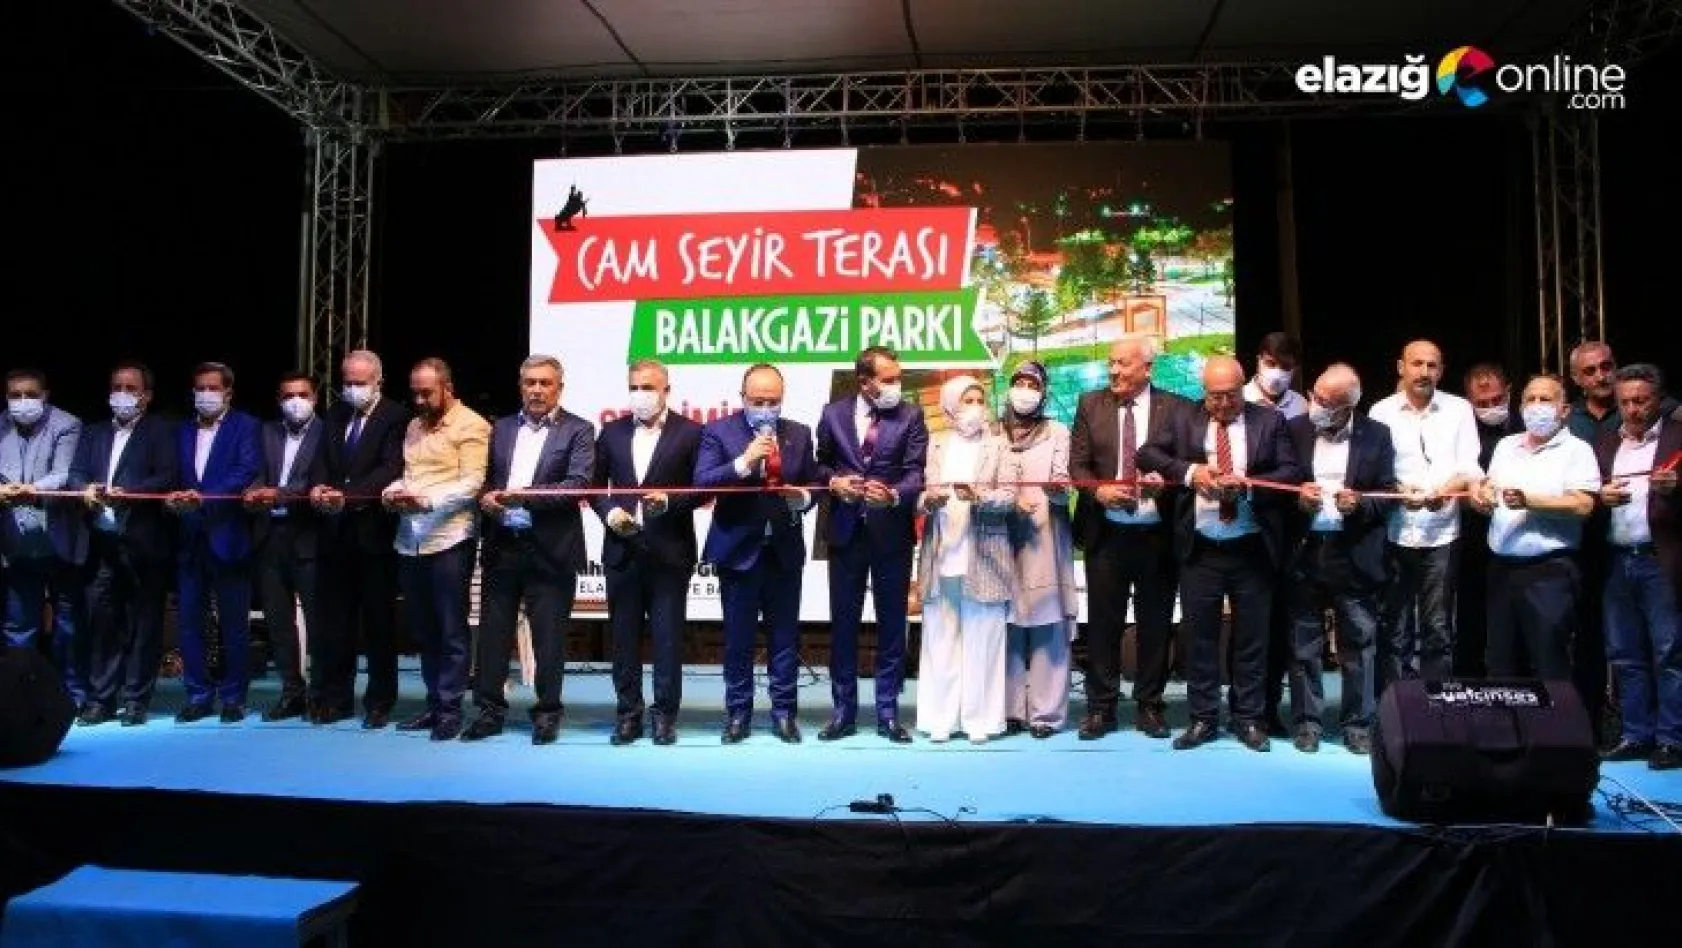 Balakgazi Parkı ve Cam Seyir Terası Açıldı